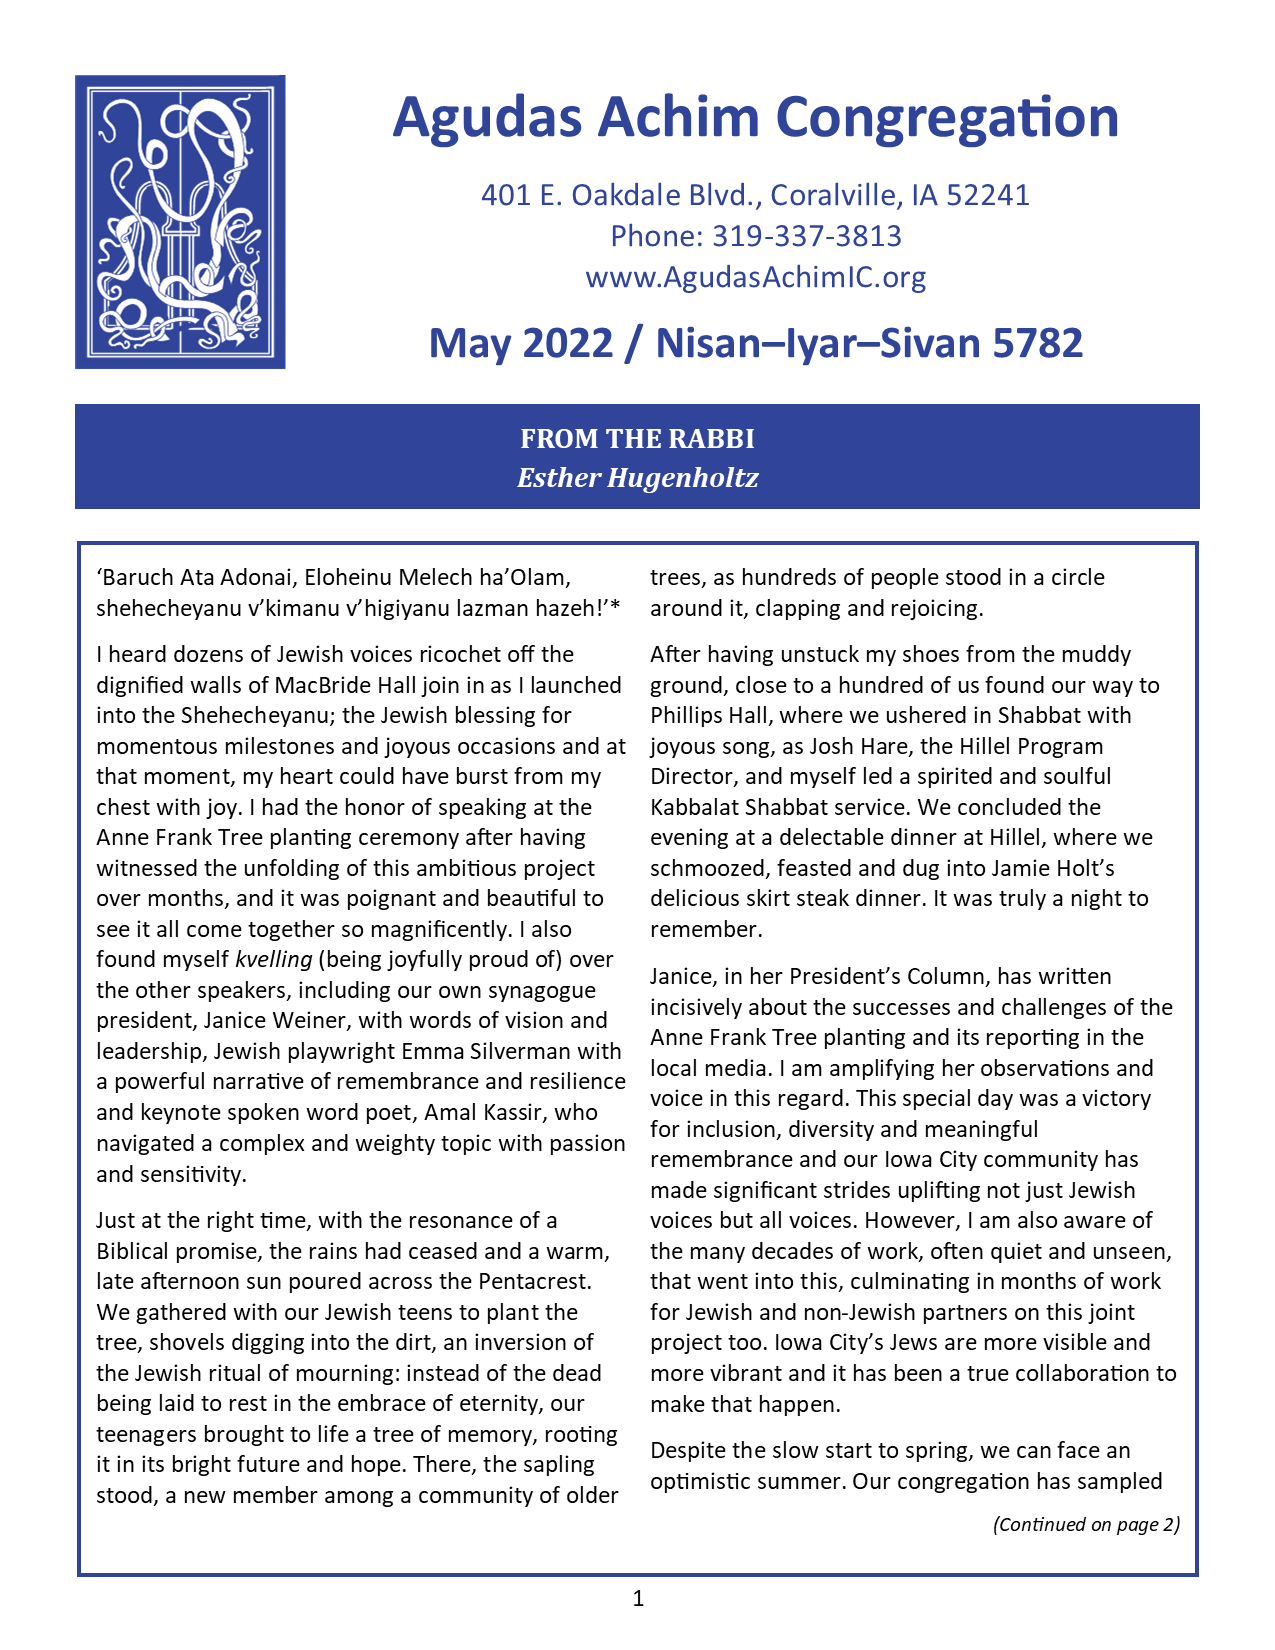 May 2022 Bulletin Cover